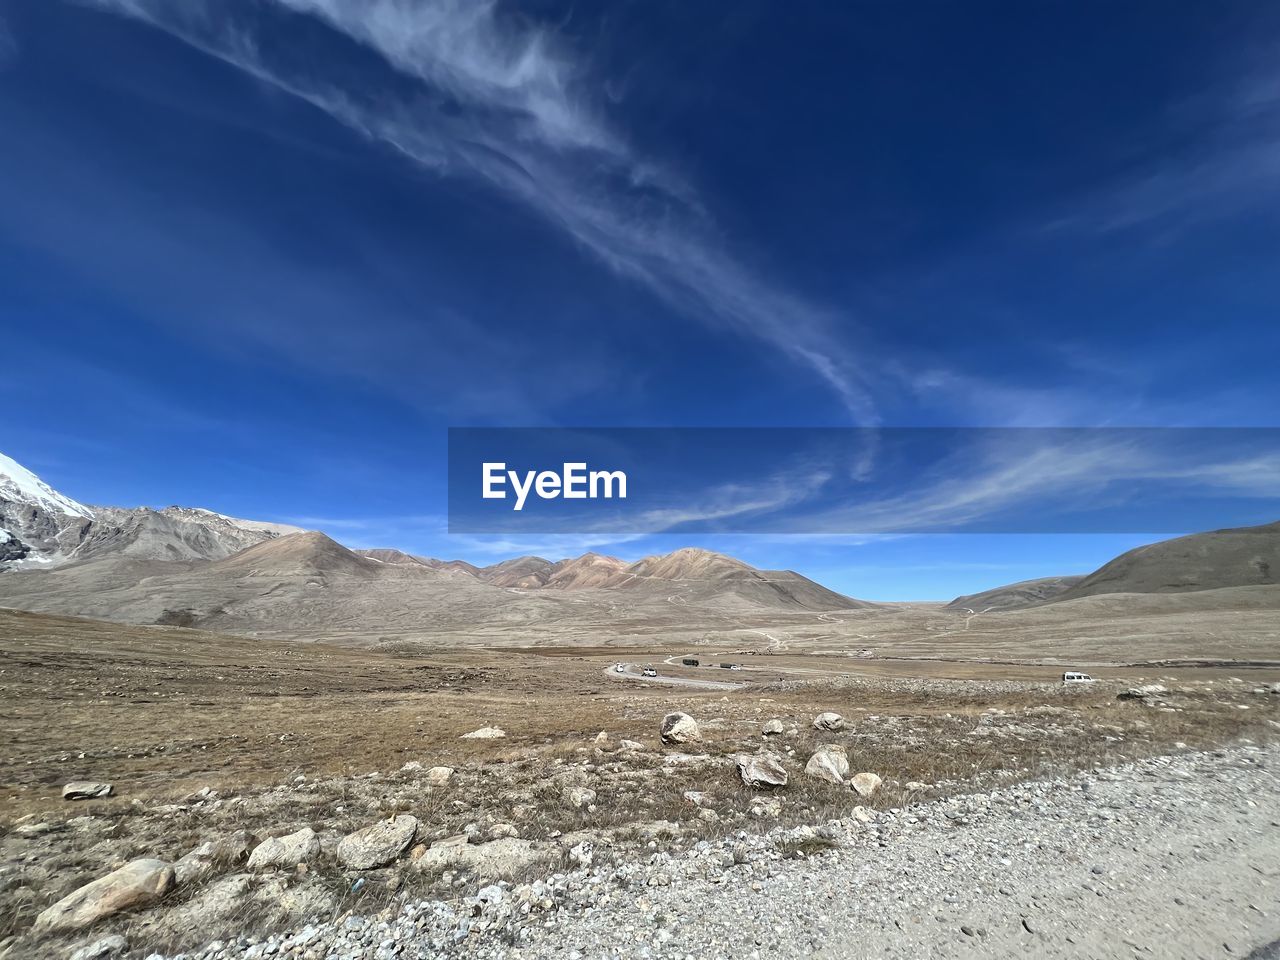 SCENIC VIEW OF DESERT AGAINST SKY